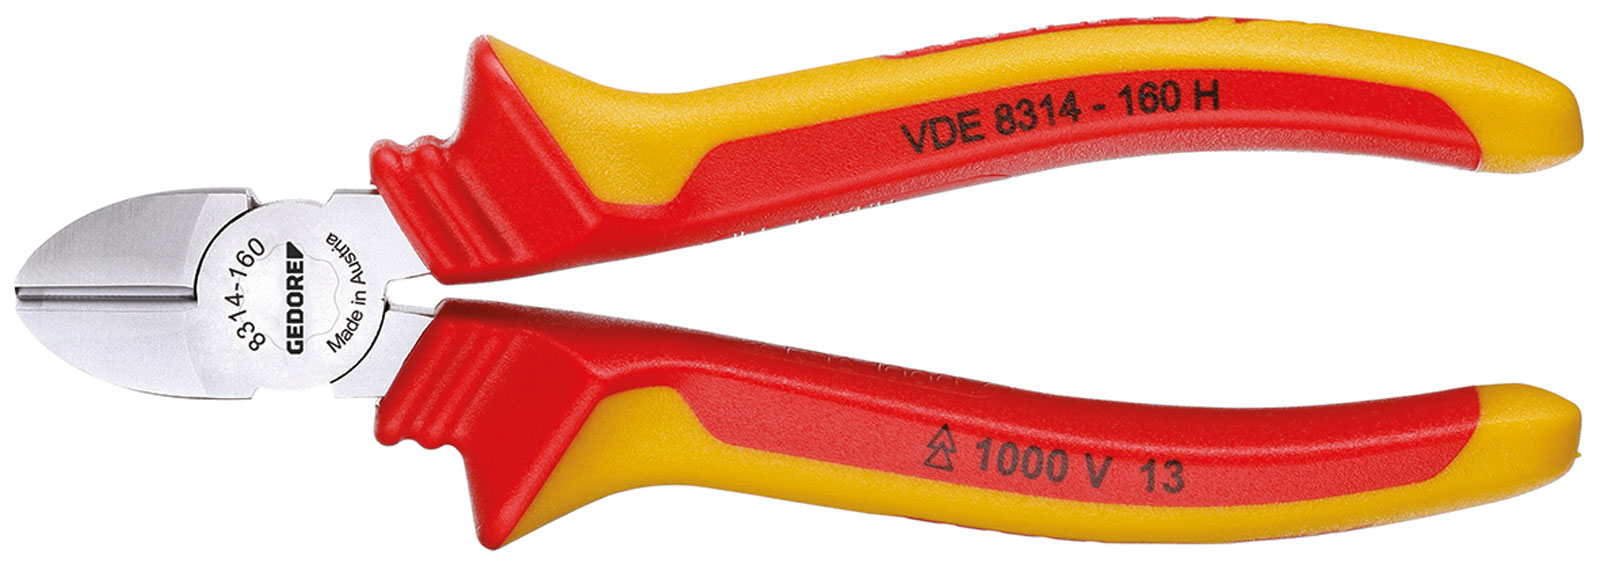 Image de VDE 8314-140 H VDE-Seitenschneider mit Hüllenisolierung 140 mm